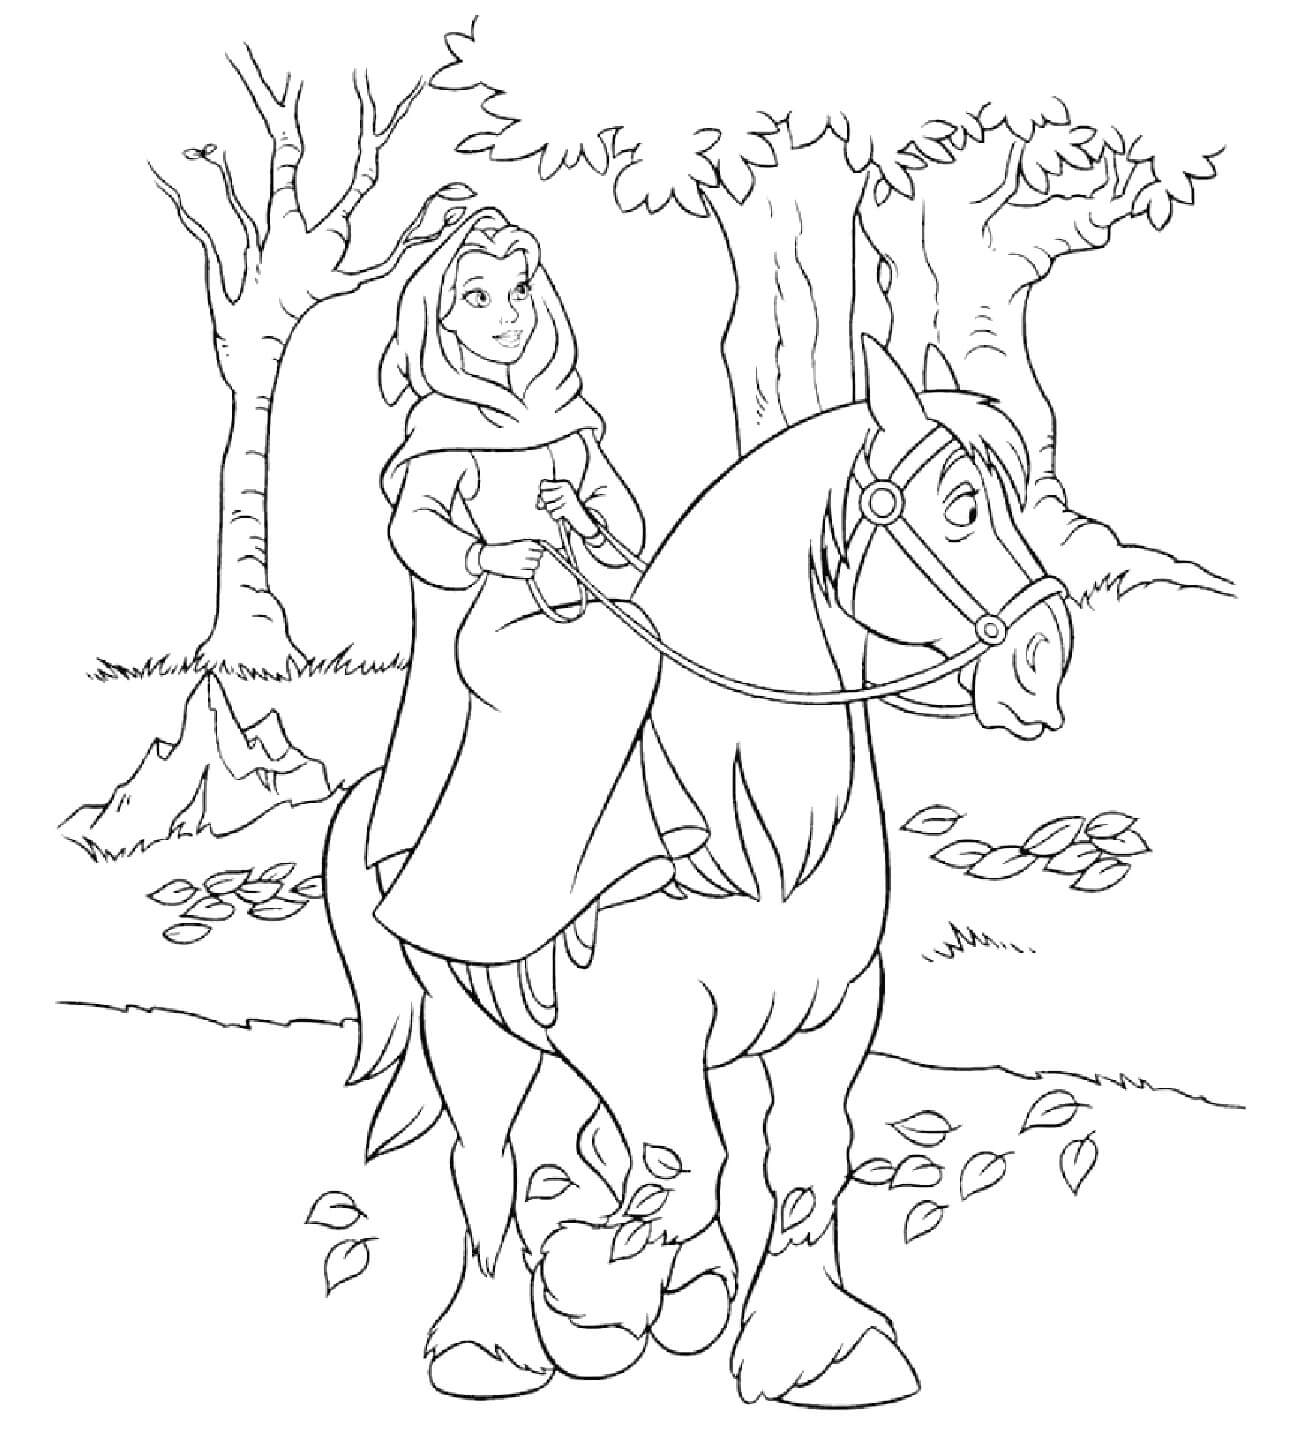 Belle zu Pferd im Dschungel